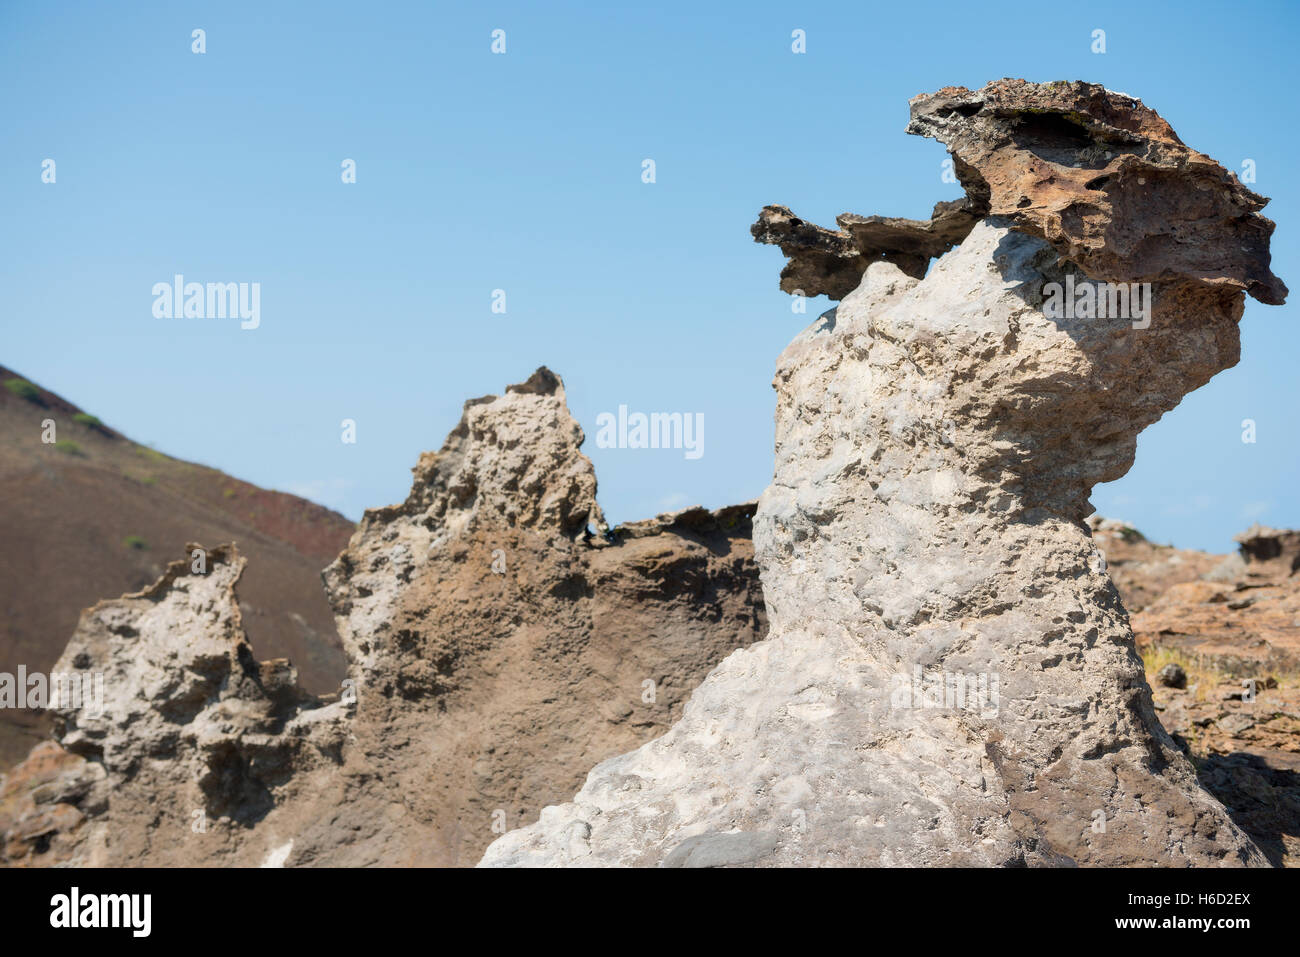 Hoodo formazioni come diavoli Scuola di Equitazione formazione geologica Isola Ascension Oceano Atlantico reso famoso da Charles Darwin Foto Stock